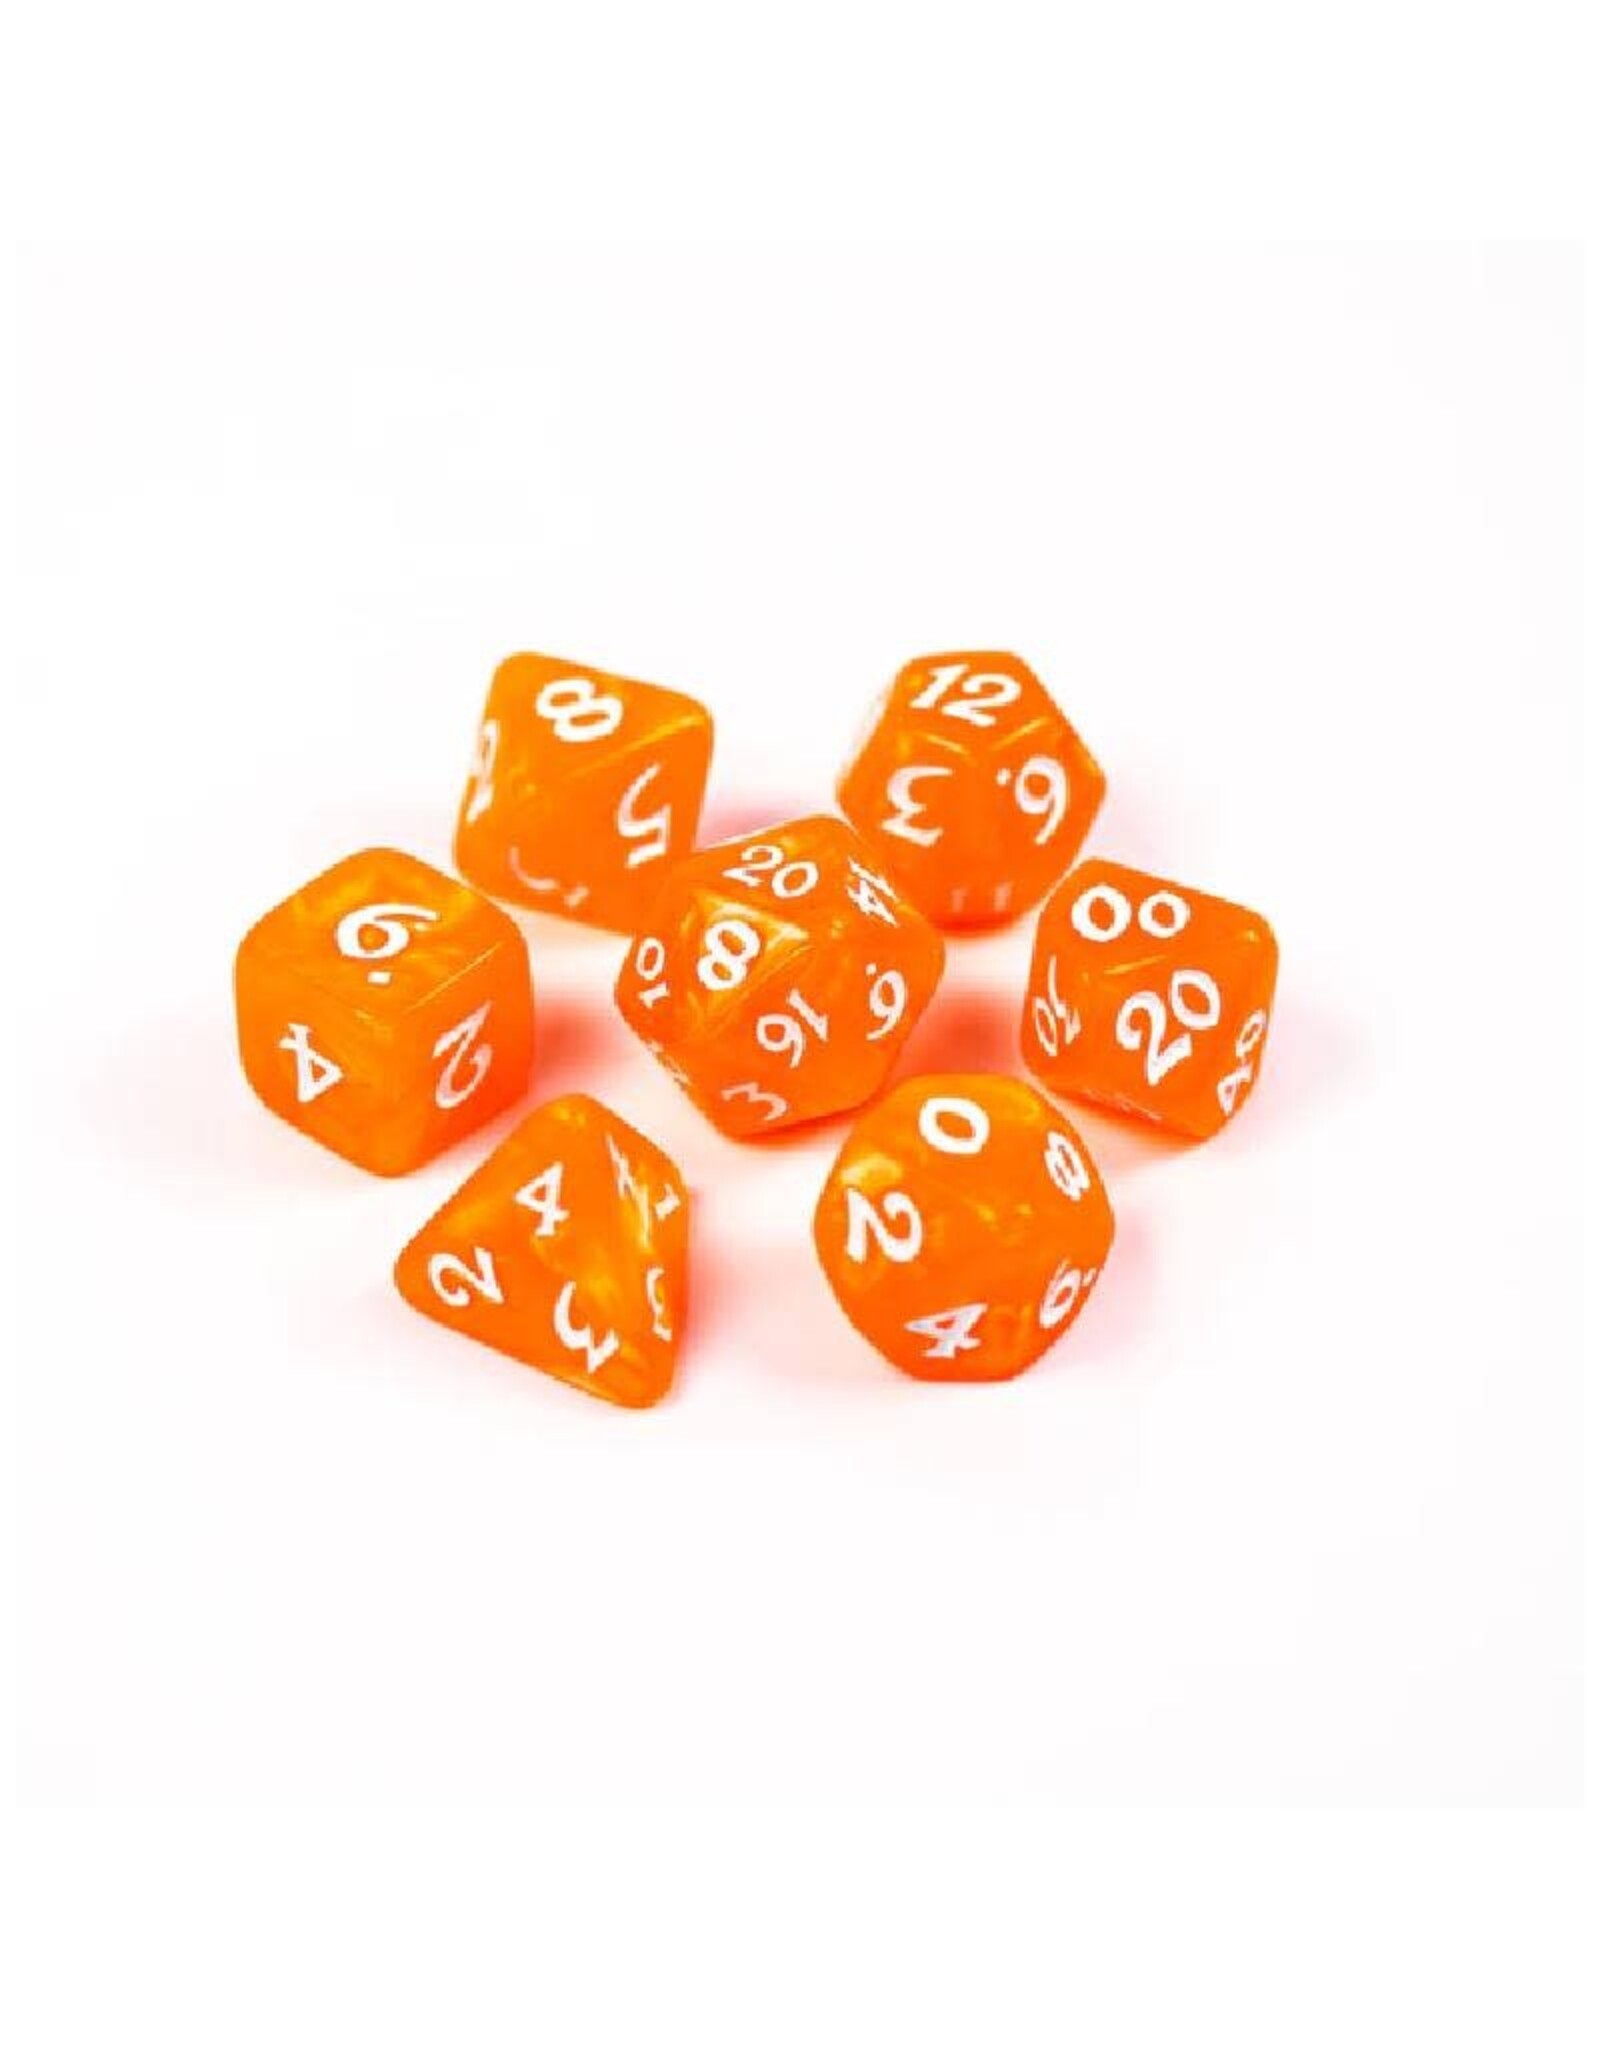 Die Hard Dice 7pc RPG Set - Essentials - Orange w/White